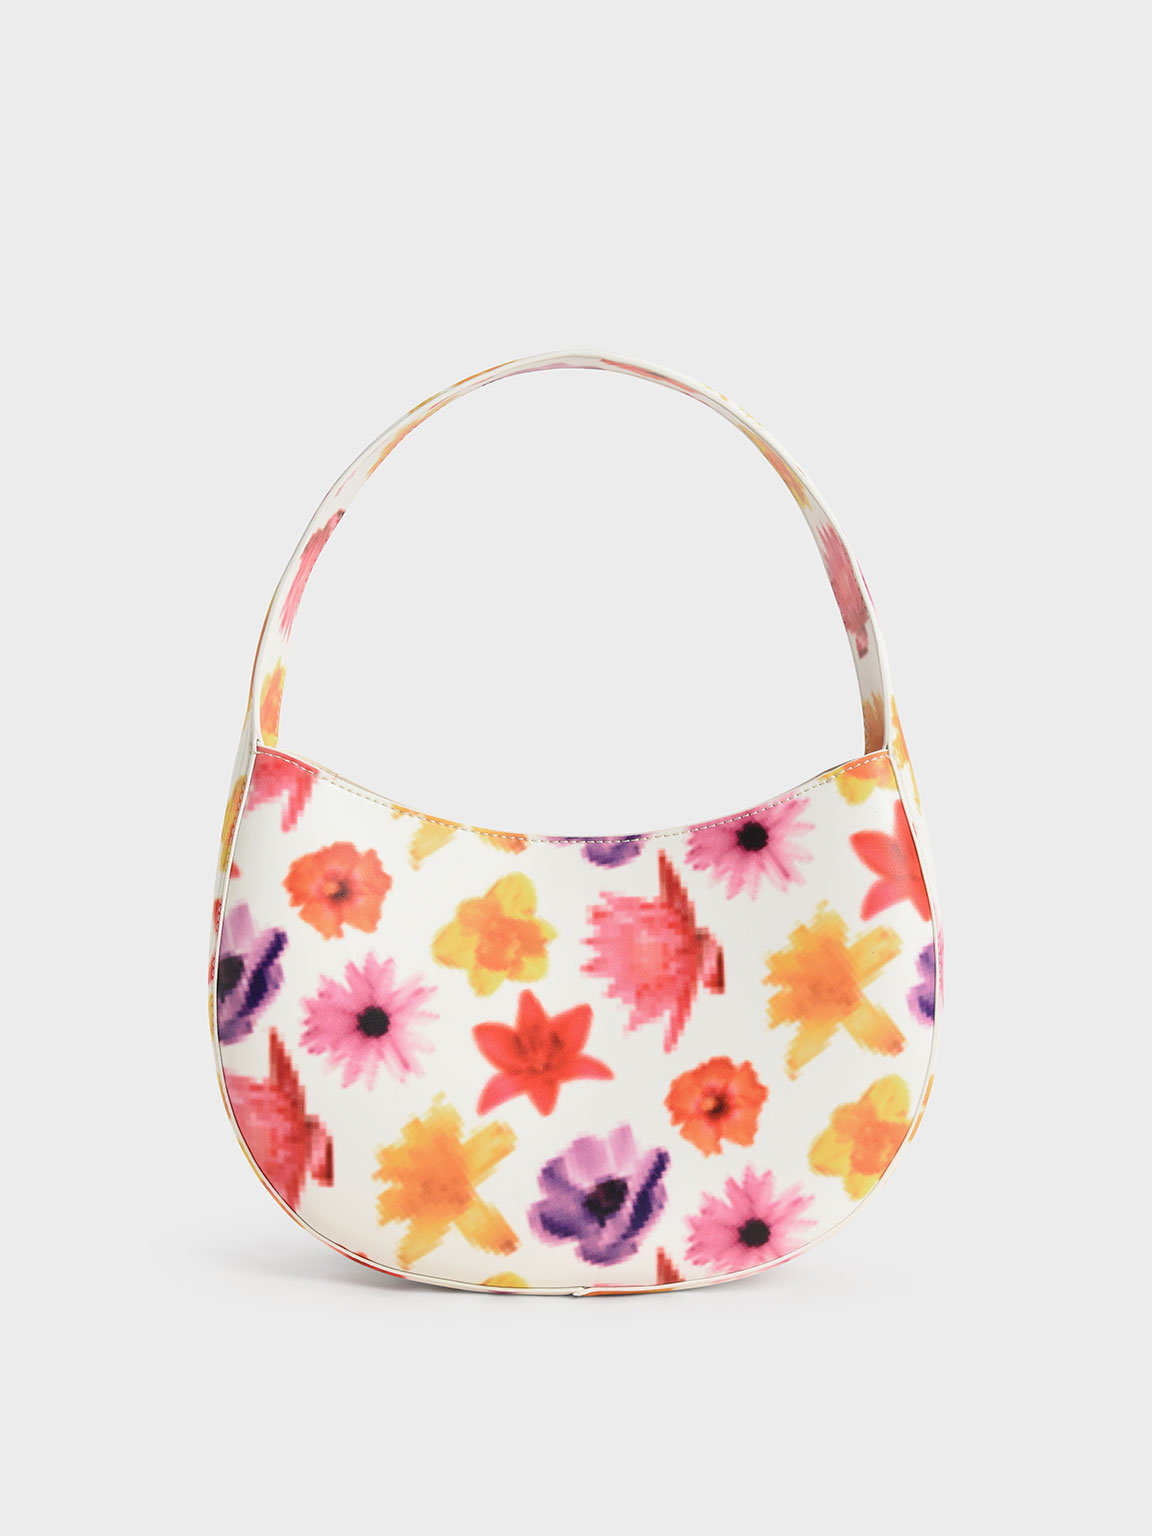 Coda Floral-Print Top Handle Hobo Bag